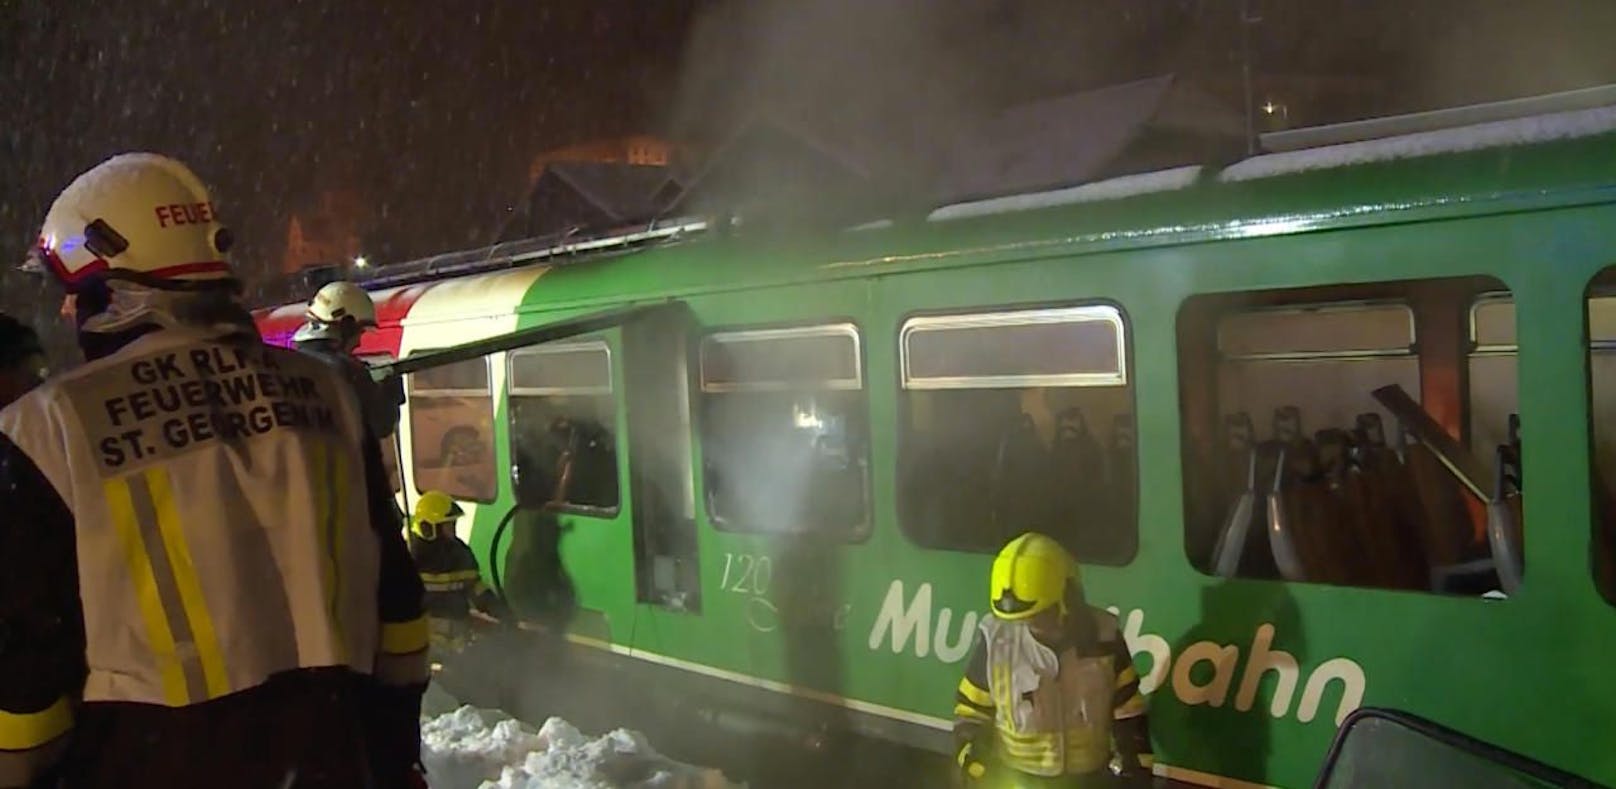 Murtal-Bahn fing Feuer: 150 Passagiere gerettet